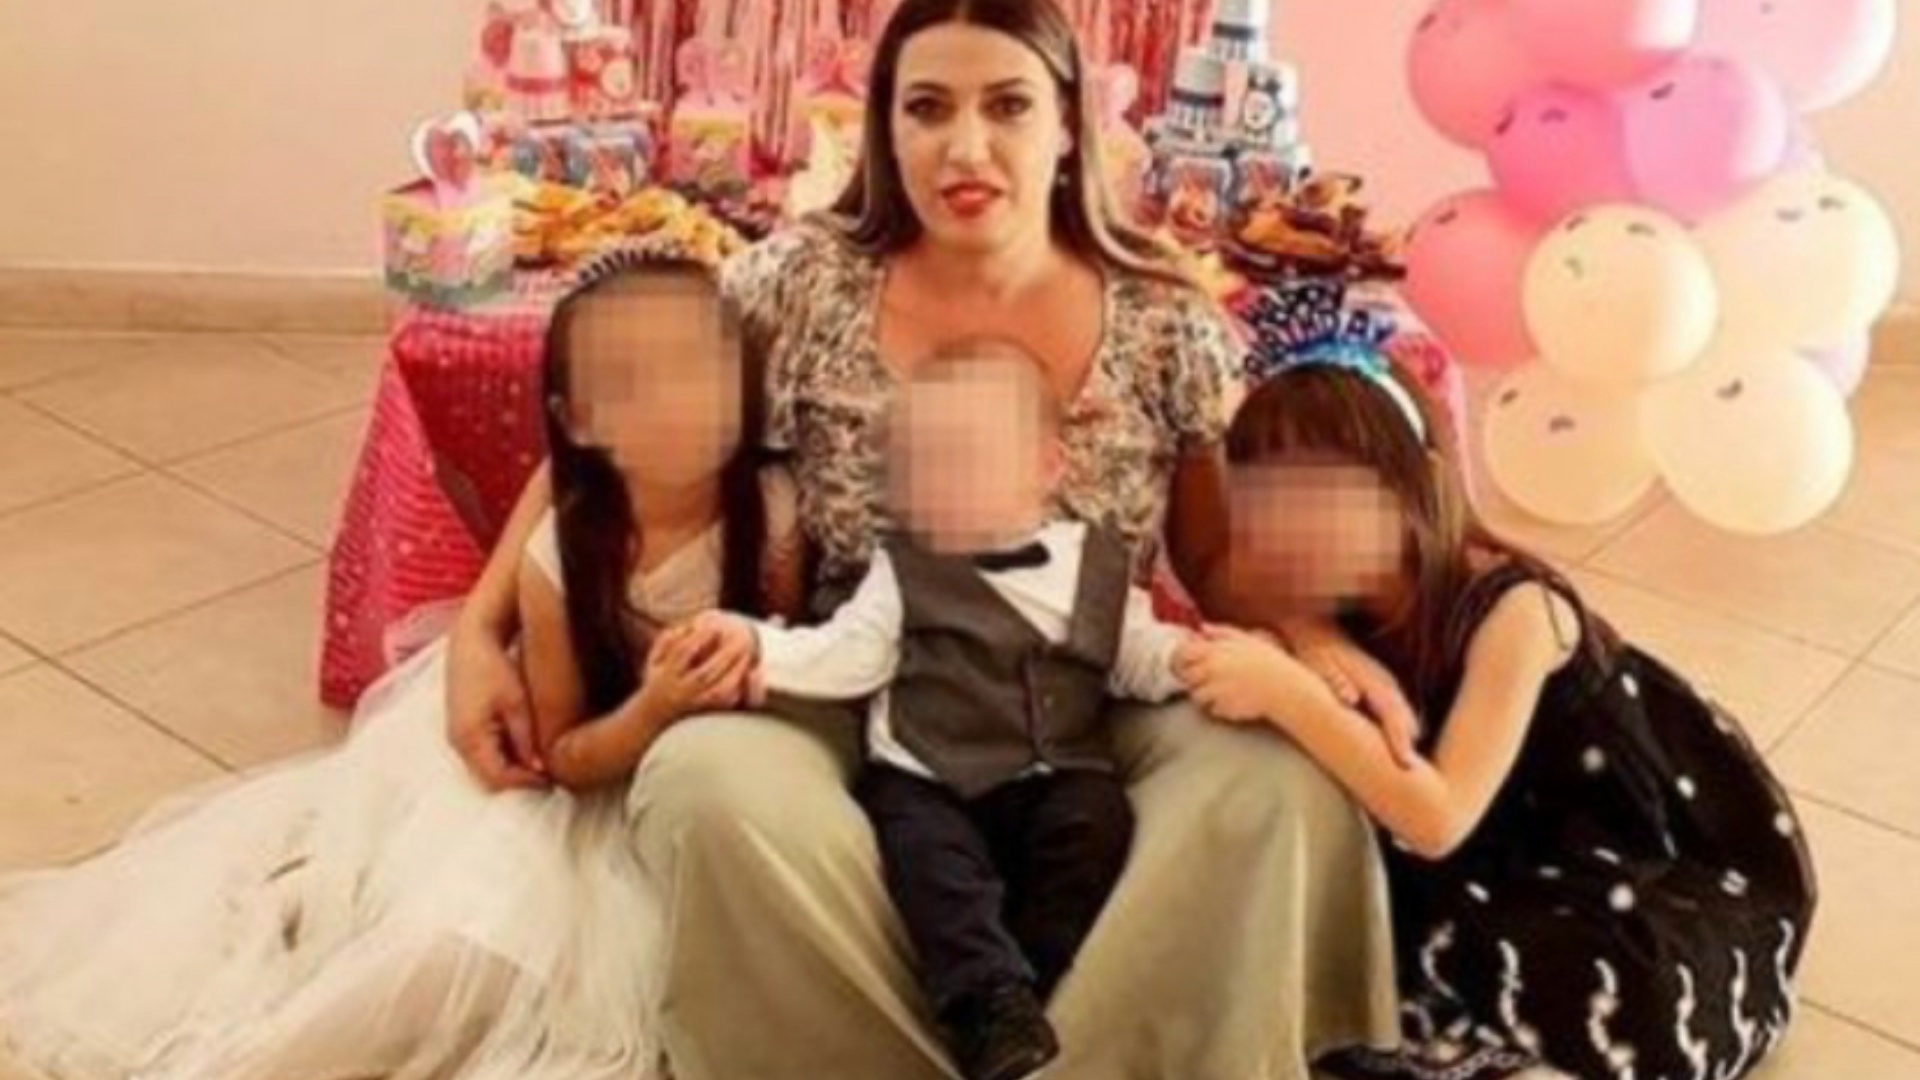 Nëna u hodh në Bunë me tre fëmijët e mitur, gjendet edhe trupi i pajetë i djalit 3-vjeçar!